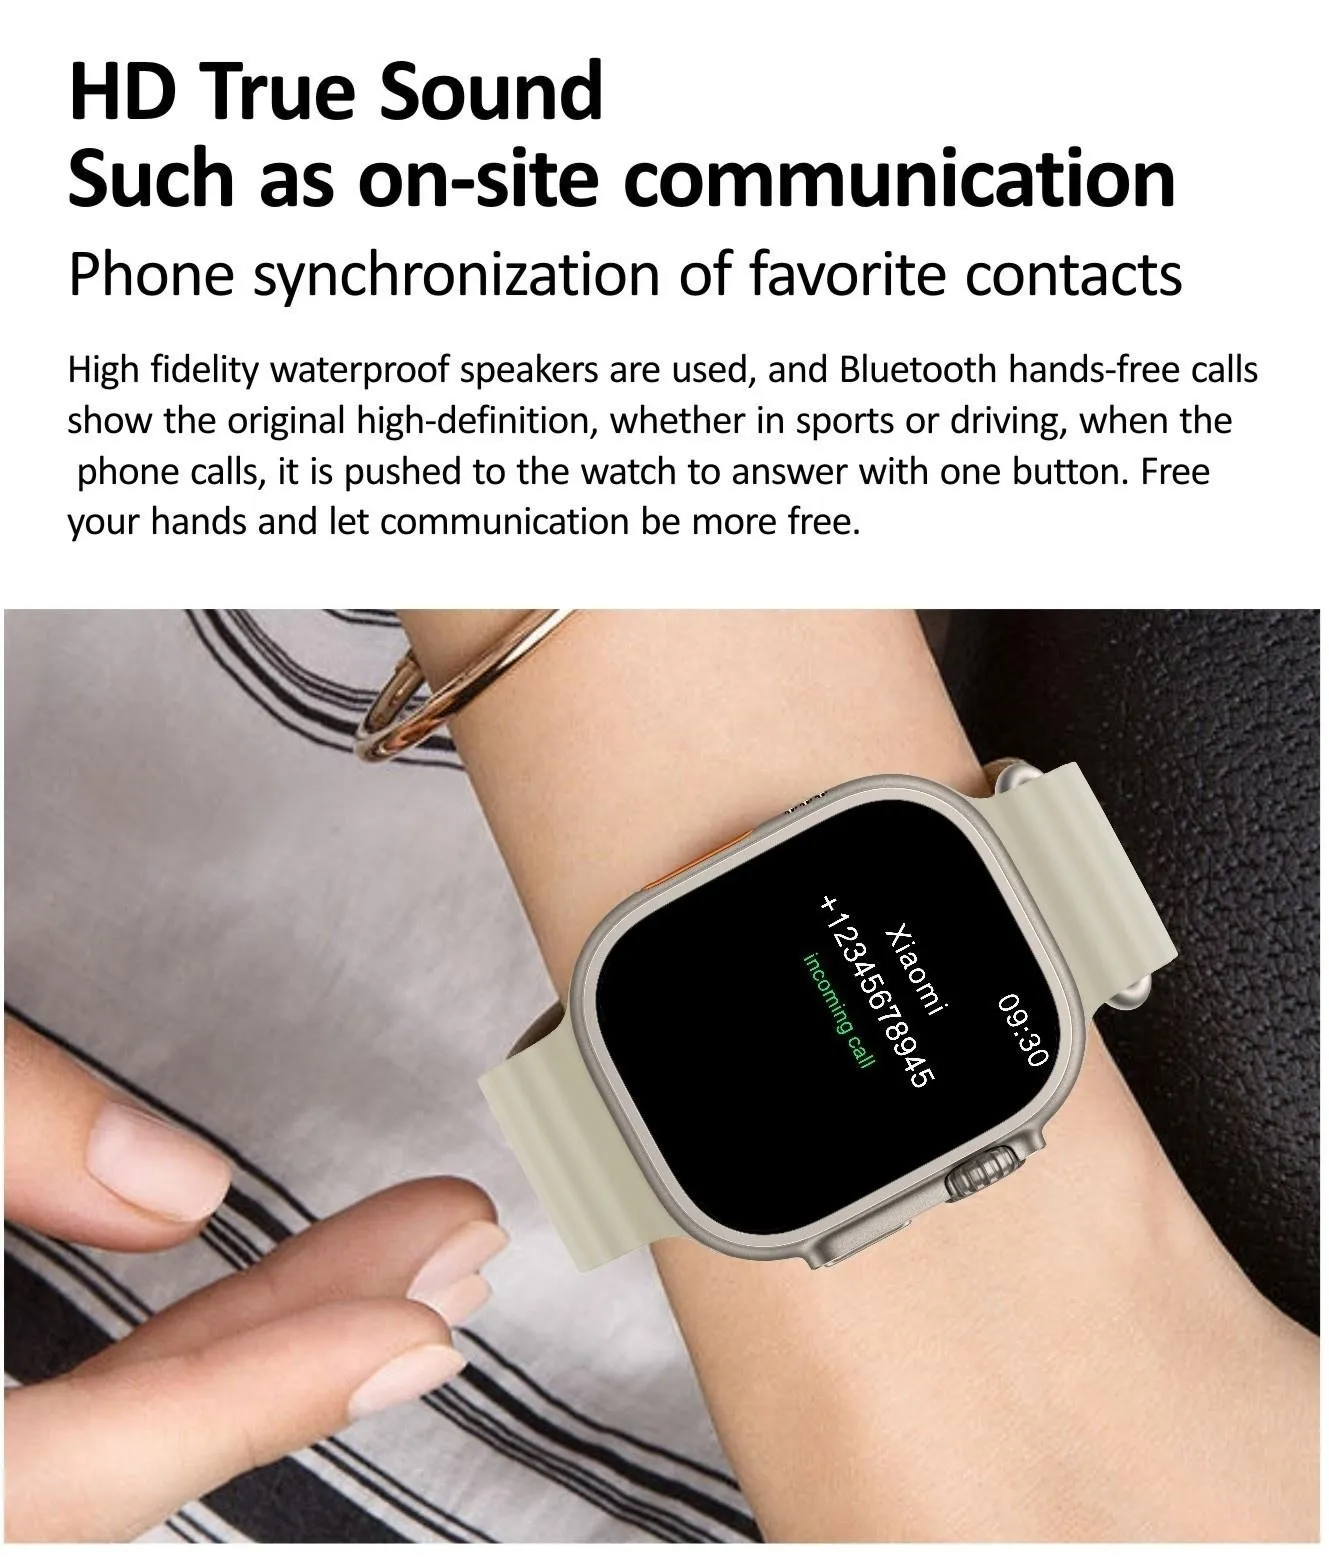 HK9 Ultra 2 AMOLED Smart Watch 2024 Gen 3 reloj inteligente hombre Series 9  ChatGPT NFC